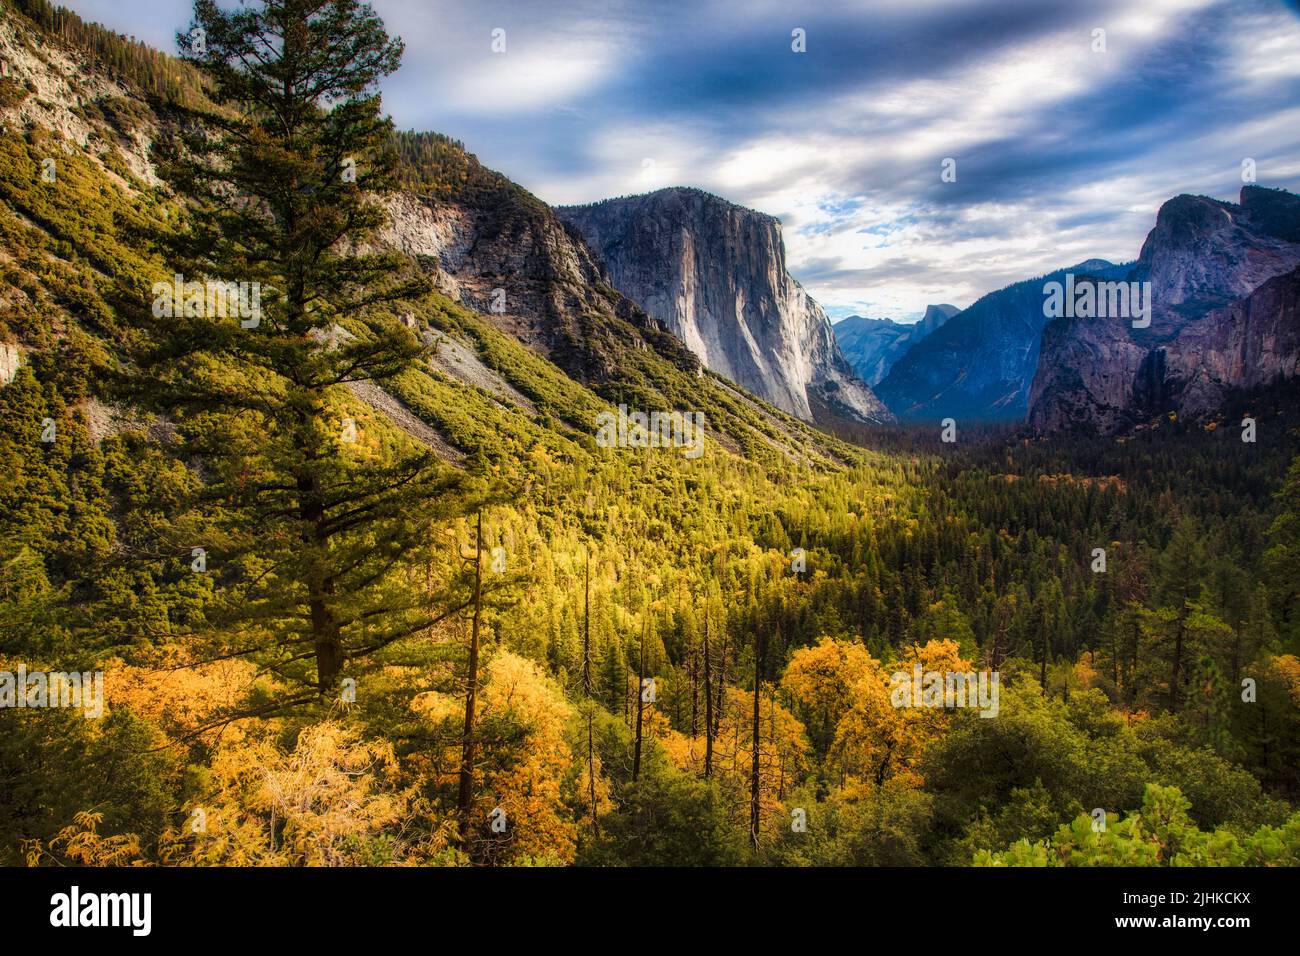 El bosque del Valle de Yosemite se vuelve de color otoñal en el Parque Nacional de Yosemite, California. Foto de stock